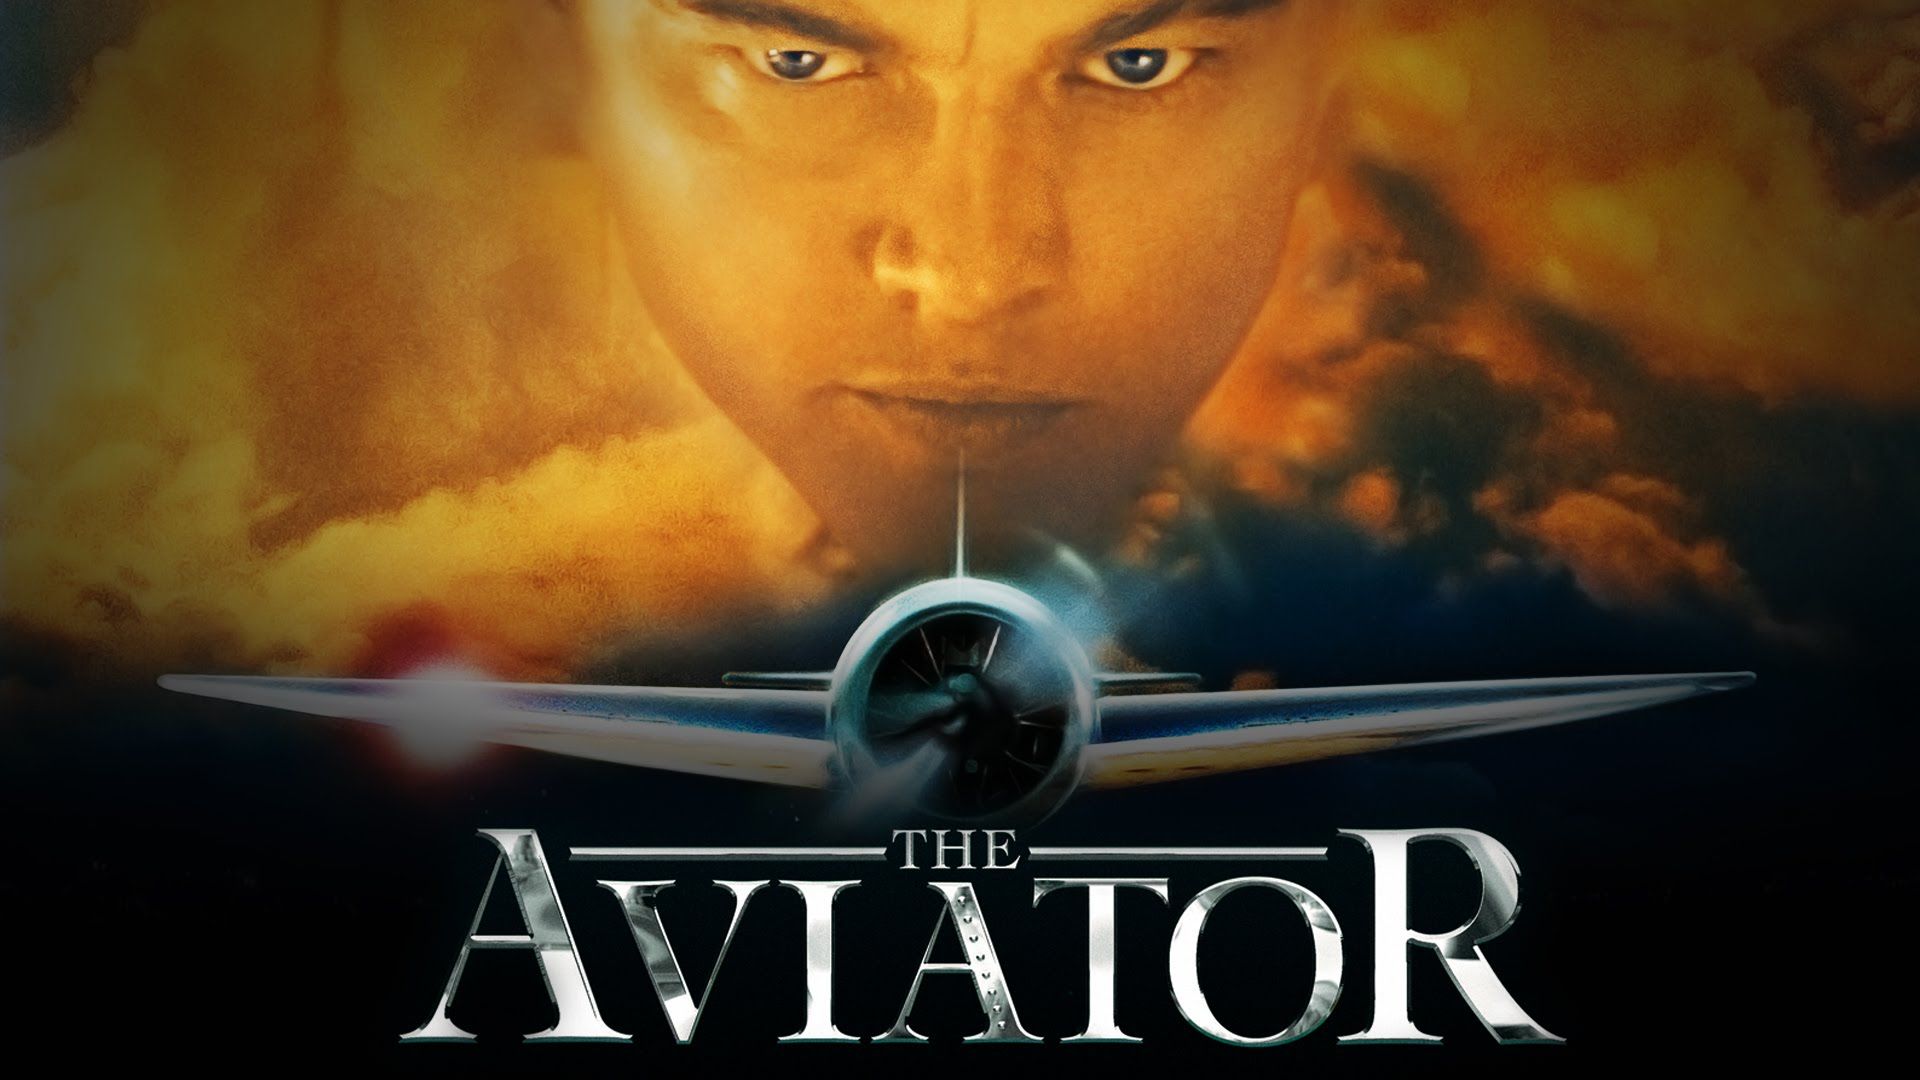 The Aviator Wallpaper. Aviator